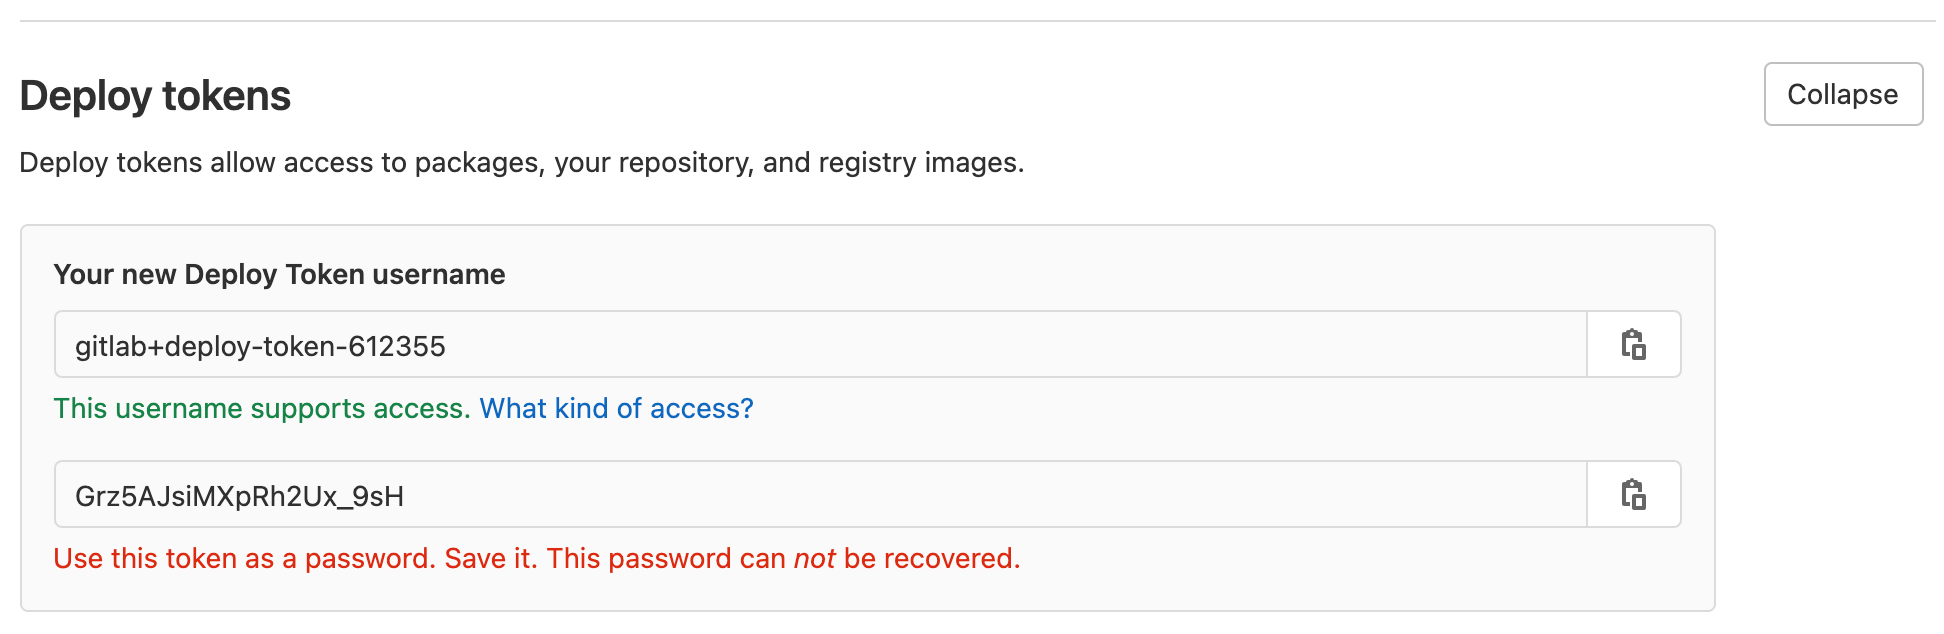 Écran des jetons de déploiement dans GitLab, affichant le nom d'utilisateur et le mot de passe associés à un jeton de déploiement